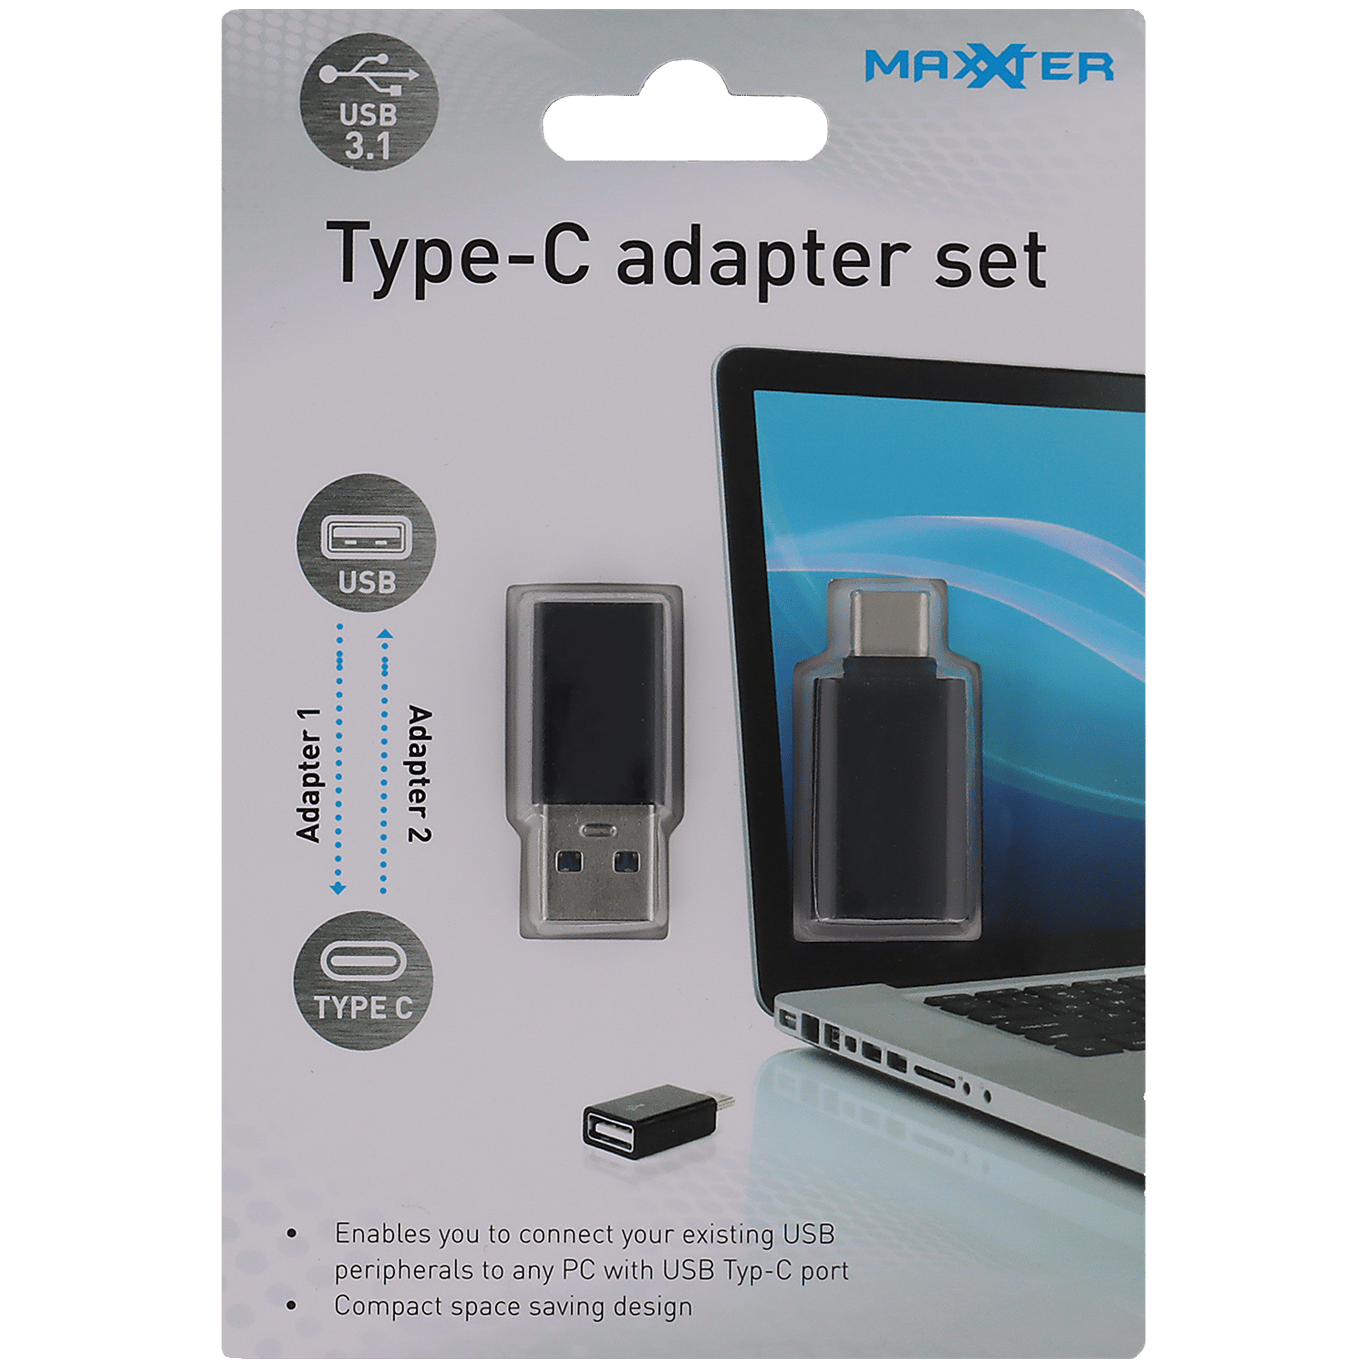 Adaptateur USB C vers Lightning, Adaptateur OTG I - os, pour téléphone  Portable, Tablette et clé USB, Casque, Lecteur de Carte, Connexion Entre  Souris